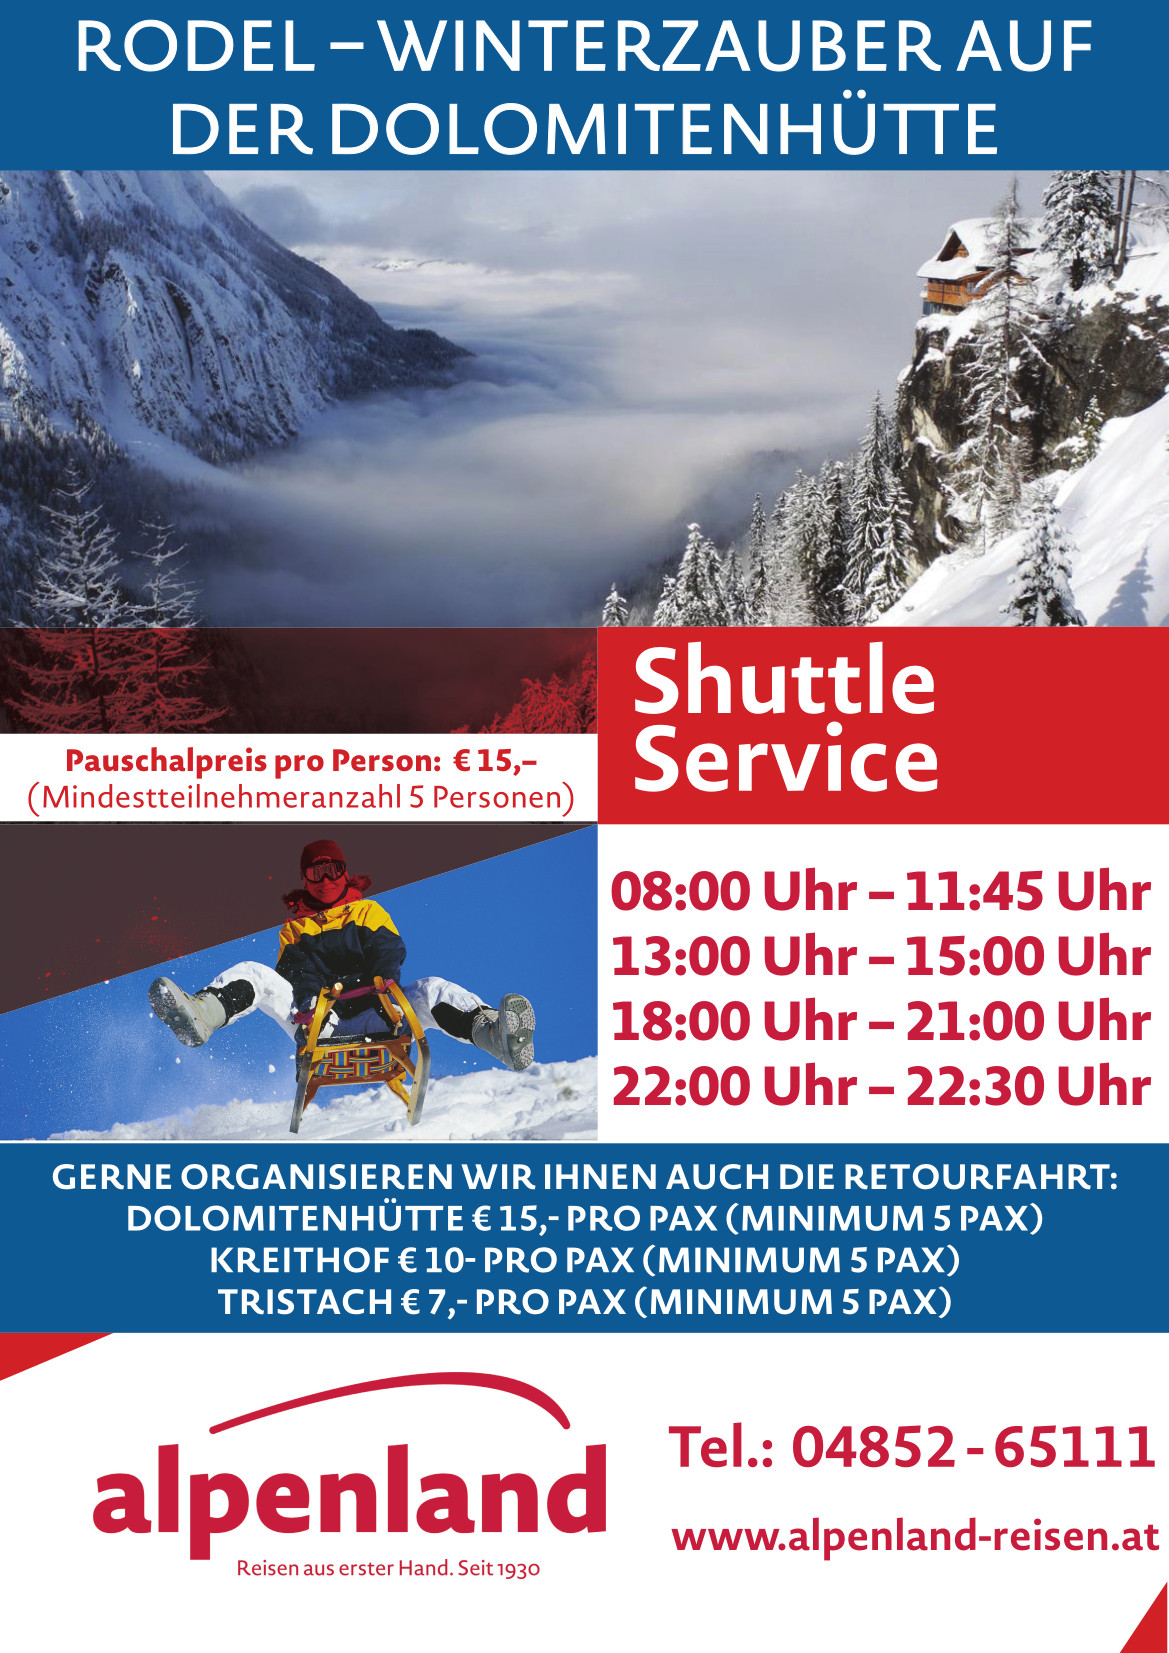 Shuttle Service Dolomitenhuette 2023 24